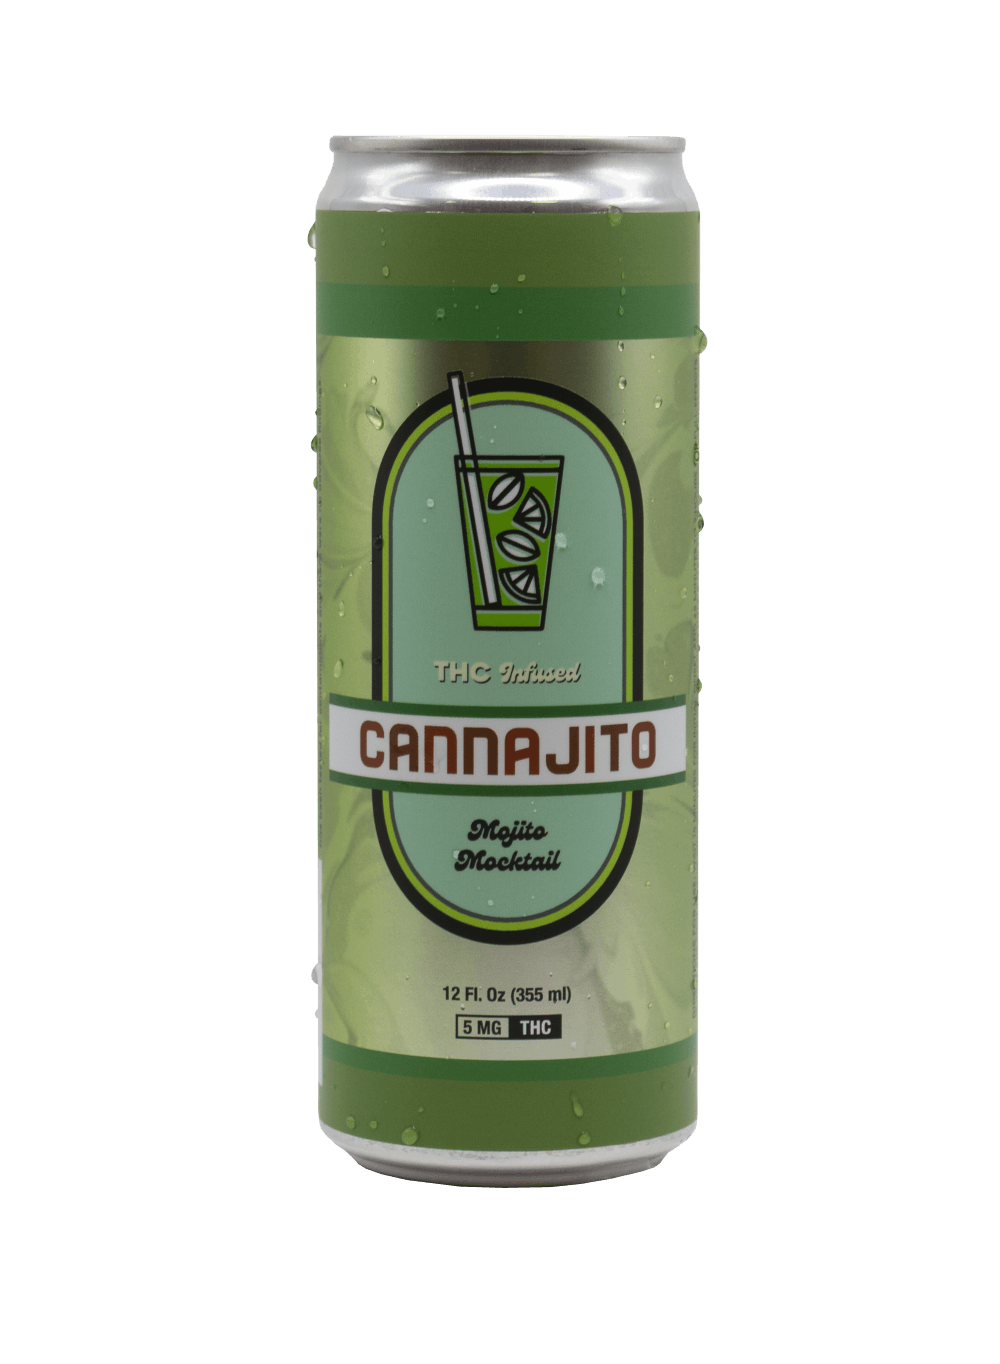 Novel Beverages 5mg - Cannajito